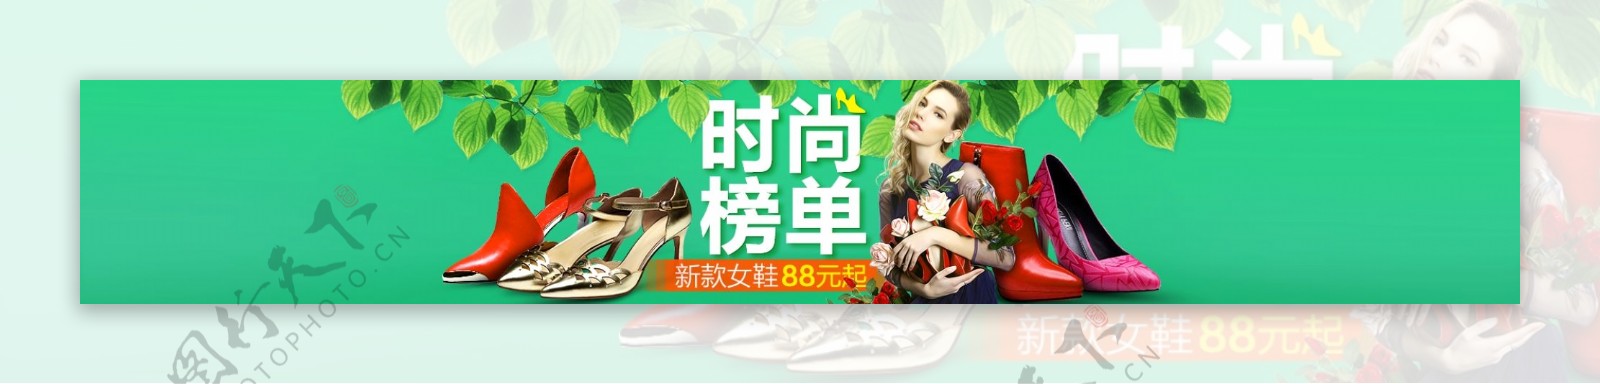 时尚榜单女鞋主题团banner